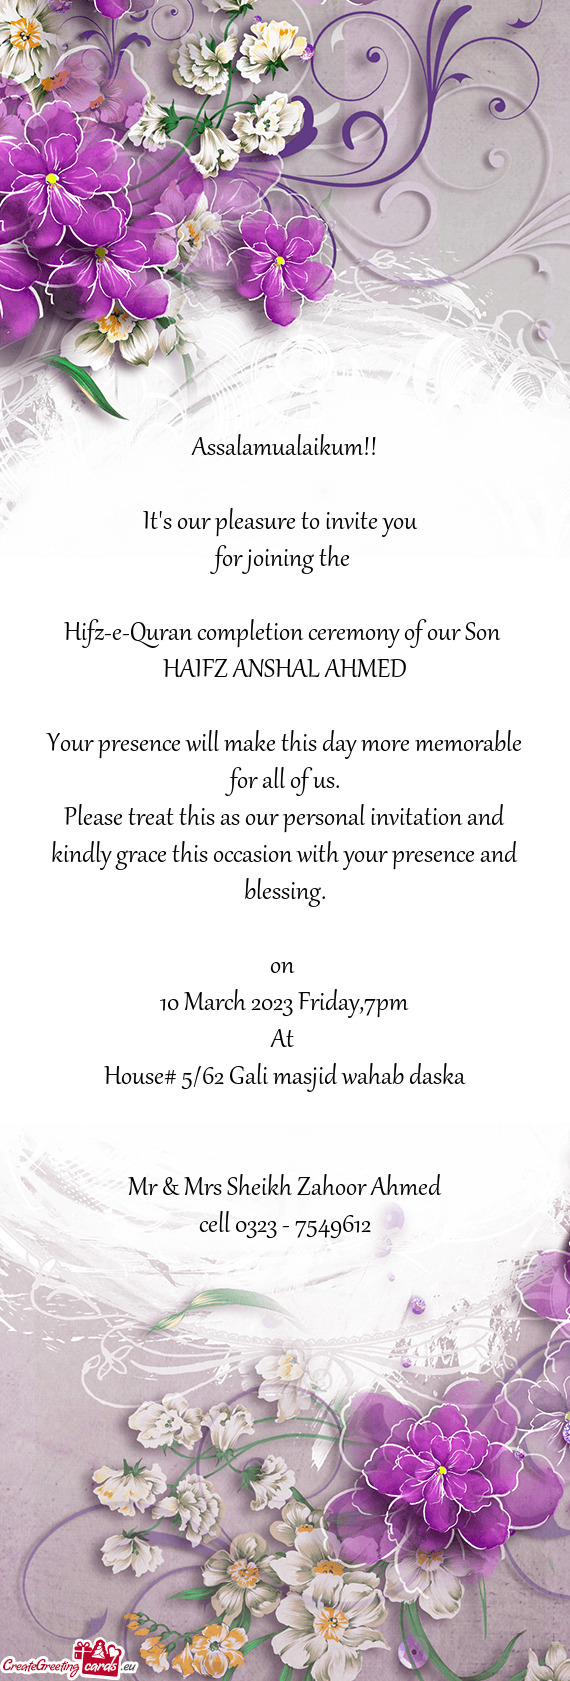 HAIFZ ANSHAL AHMED